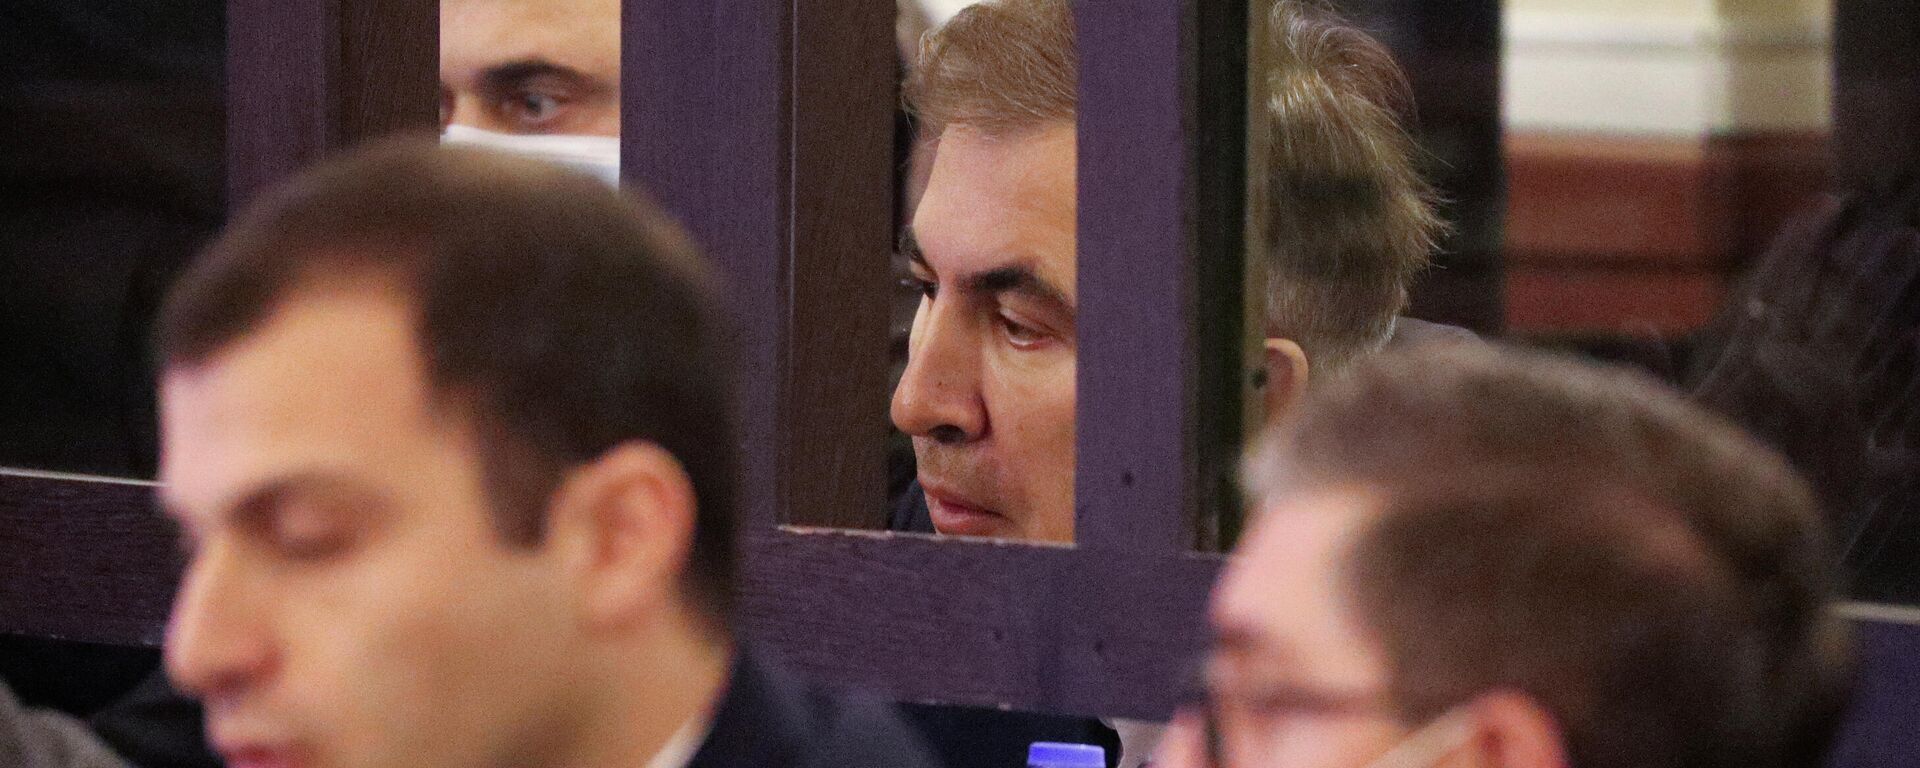 Михаил Саакашвили за решеткой, судебный процесс в тбилисском суде - Sputnik Грузия, 1920, 08.12.2021